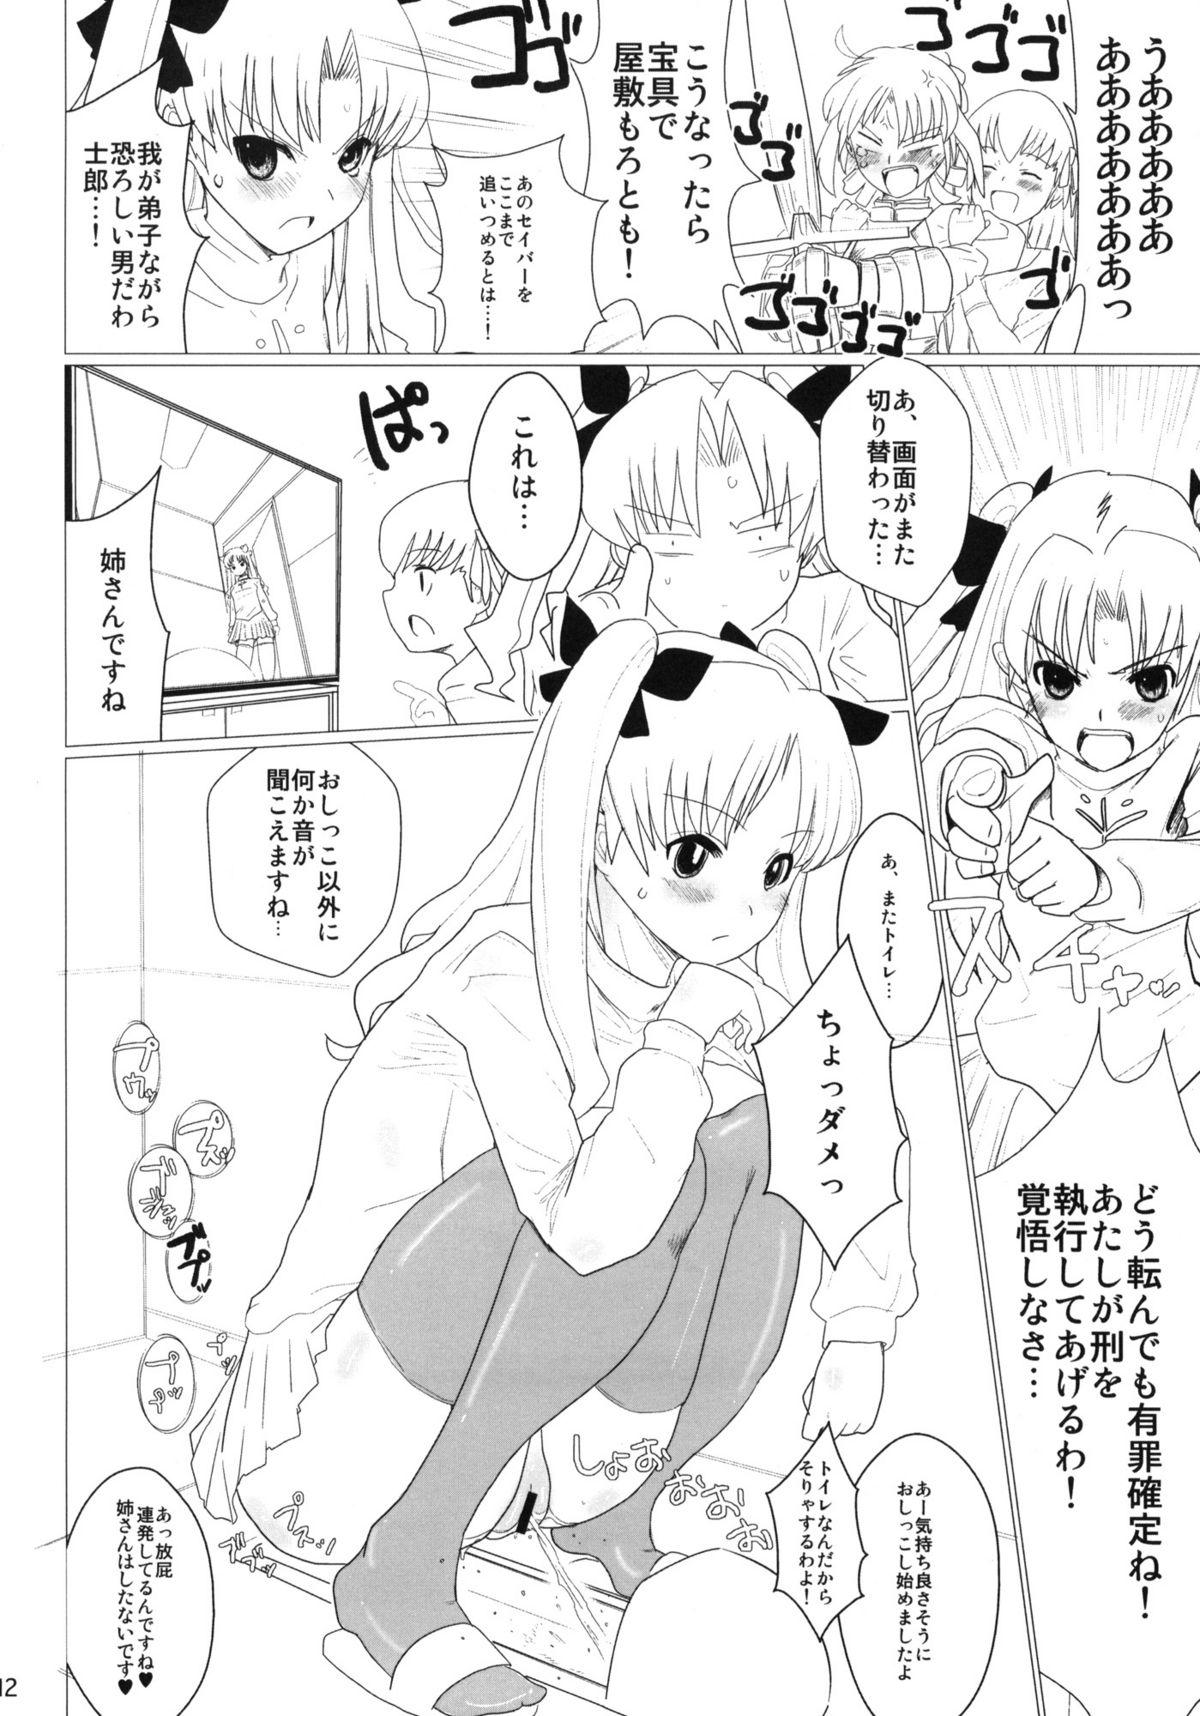 No Condom Itanshinmon Zettai Shikei - Fate stay night Interracial Porn - Page 11